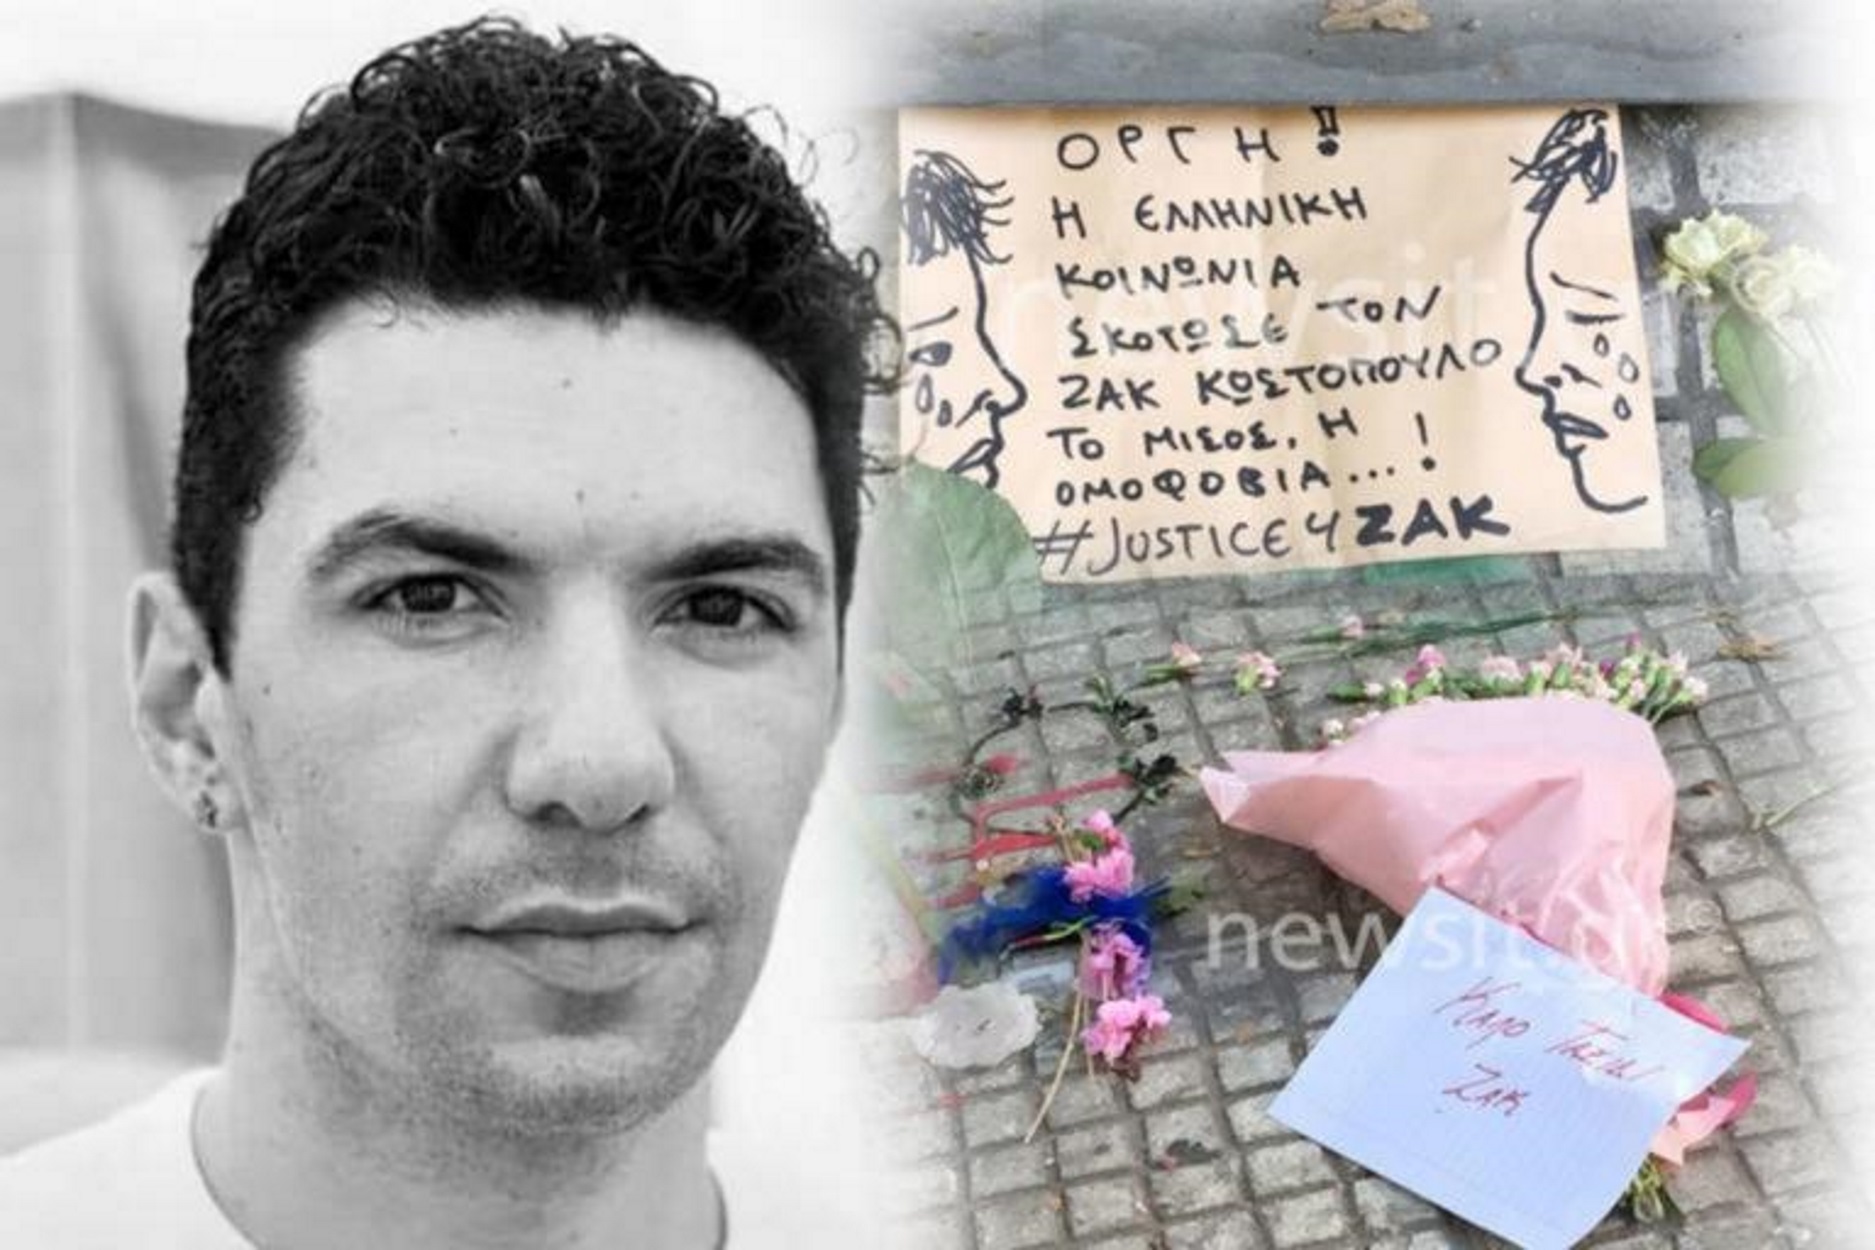 Ζακ Κωστόπουλος: Ξεκινά η δίκη για τη δολοφονία του 33χρονου ακτιβιστή